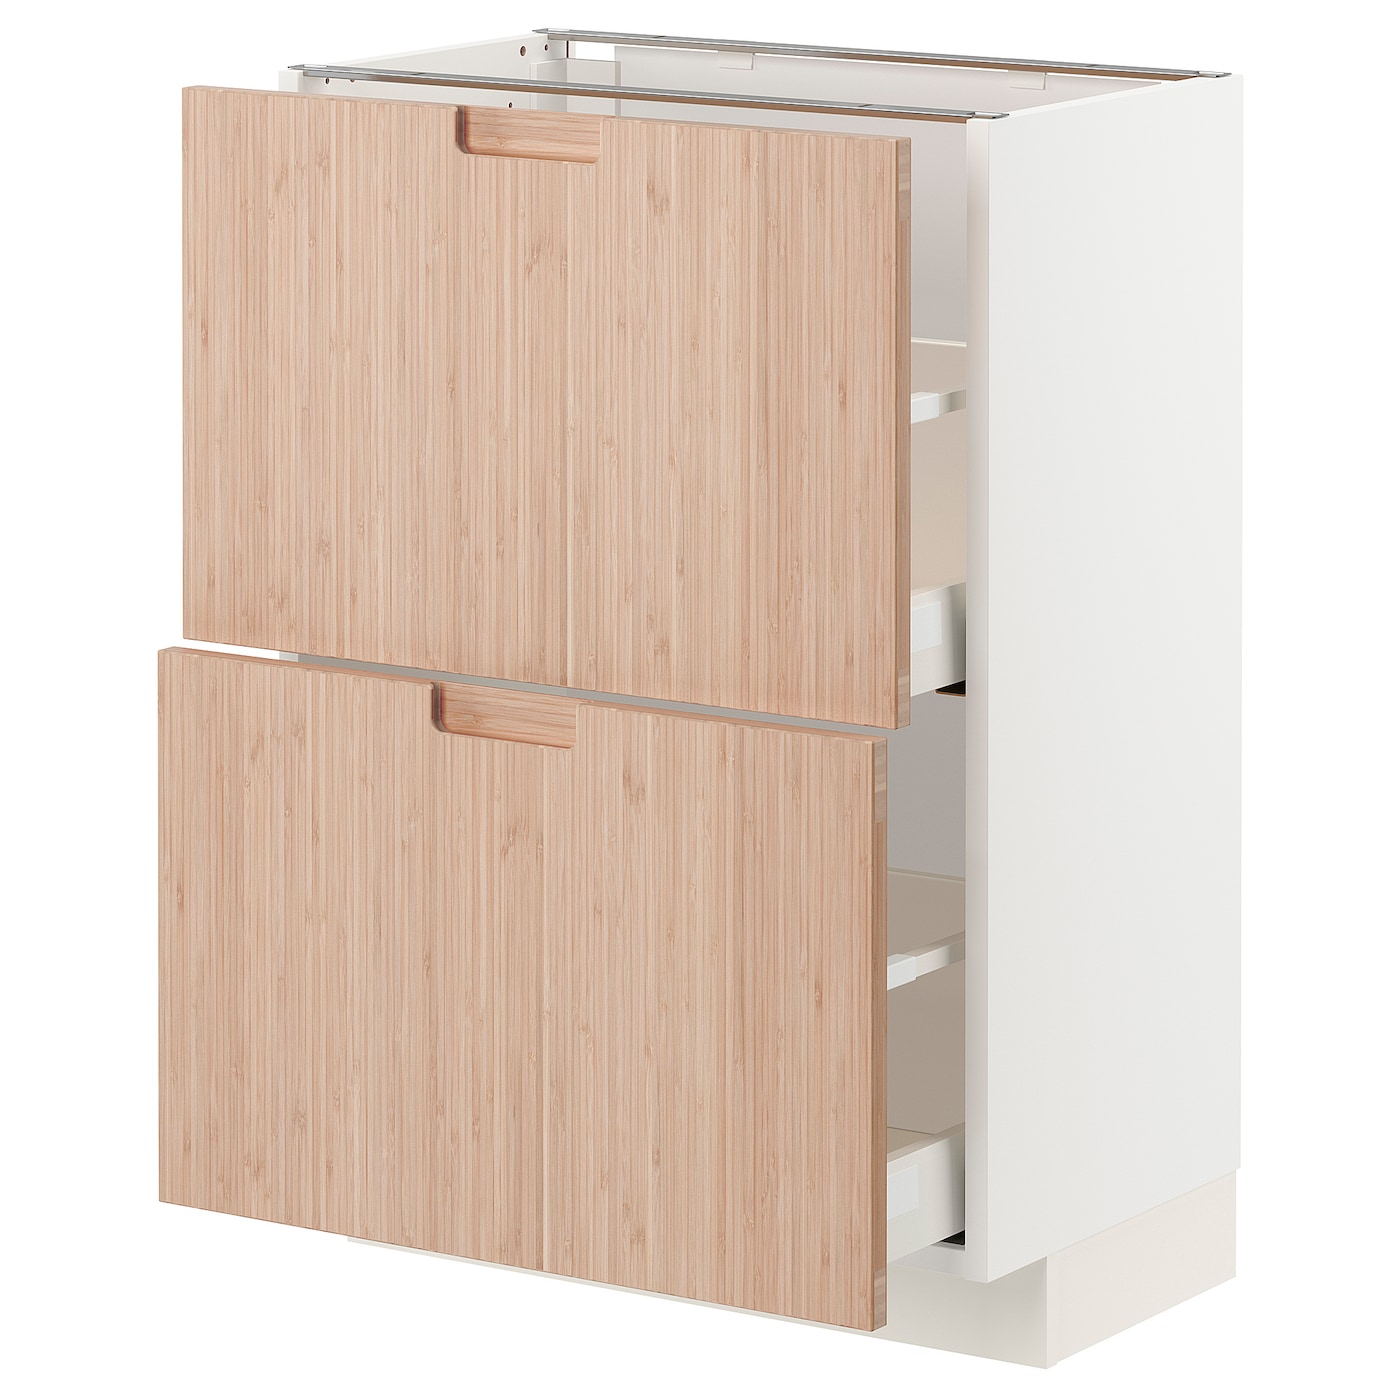 Напольный шкаф - METOD / MAXIMERA IKEA/ МЕТОД/ МАКСИМЕРА ИКЕА,  88х60 см, белый/под беленый дуб